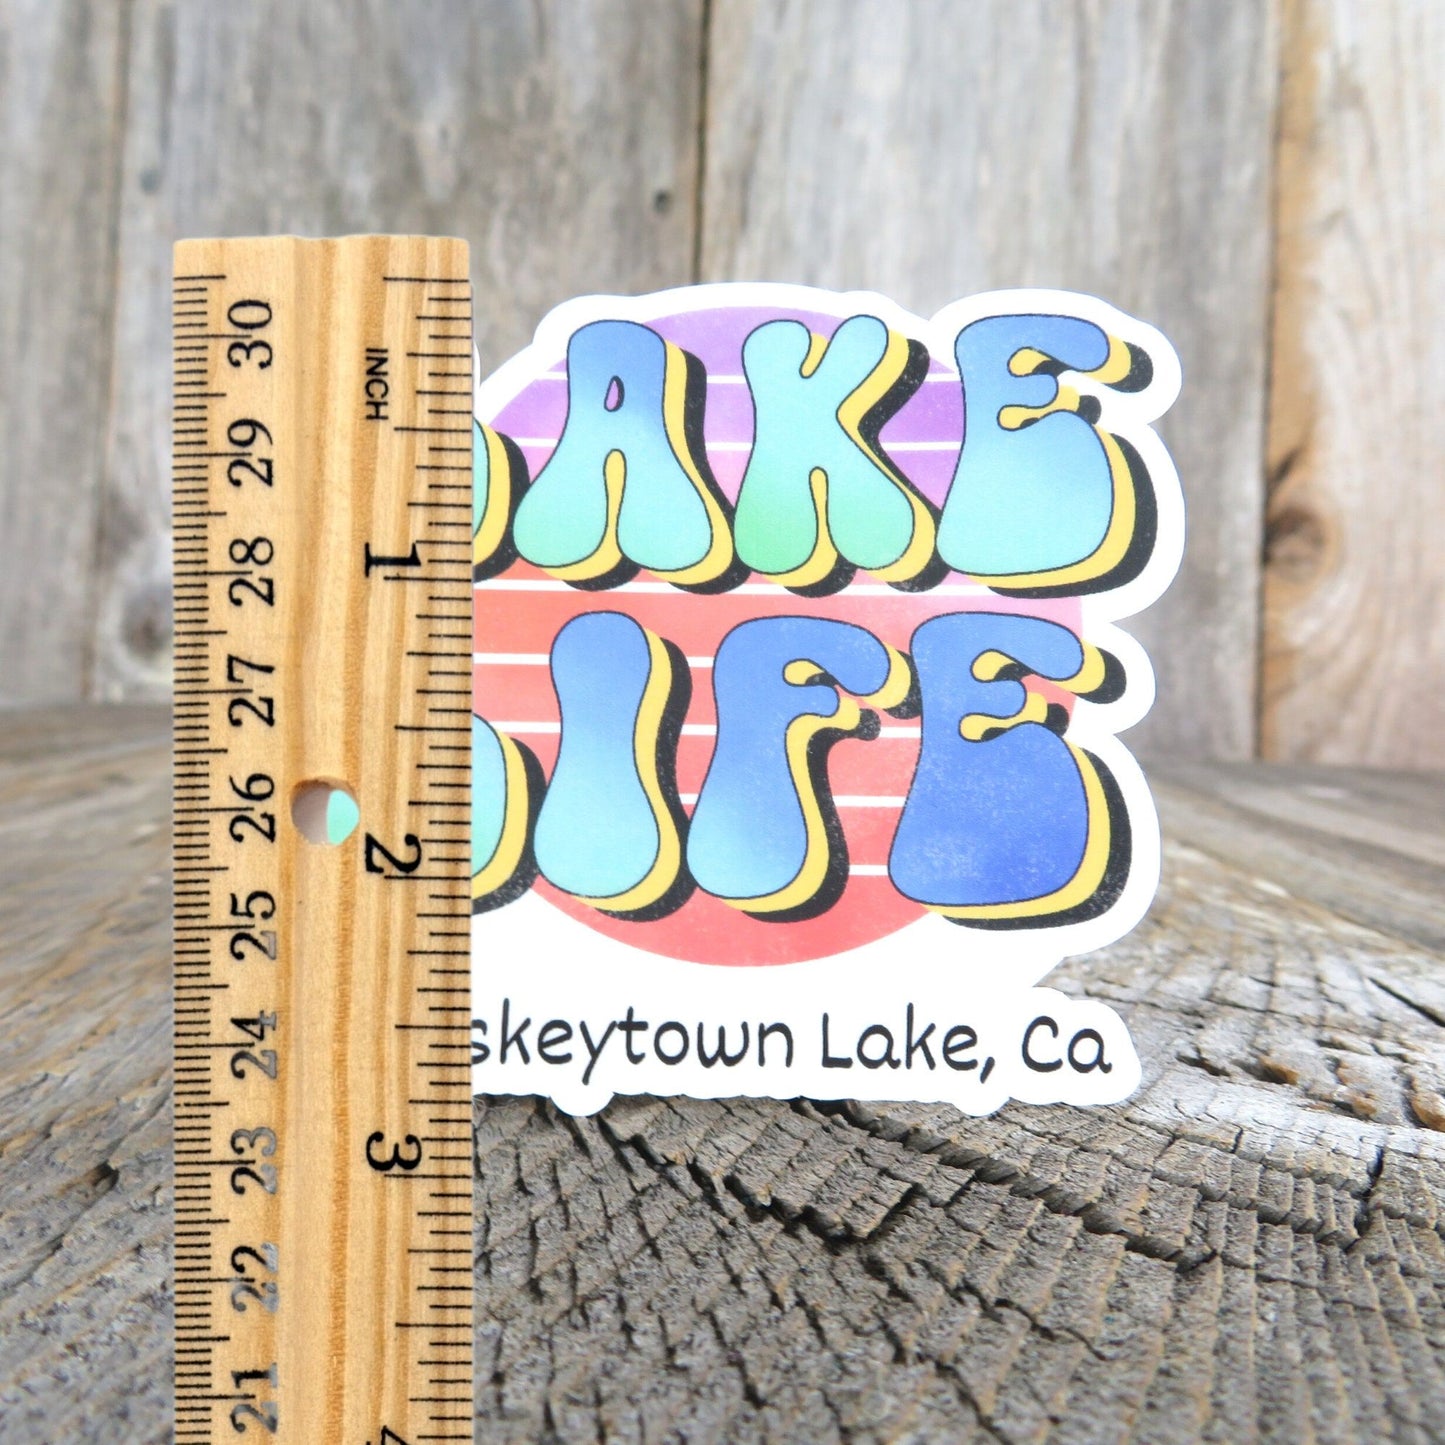 Whisketown Lake California Sticker Lake Life Waterproof Camping Outdoors Souvenir Redding Ca